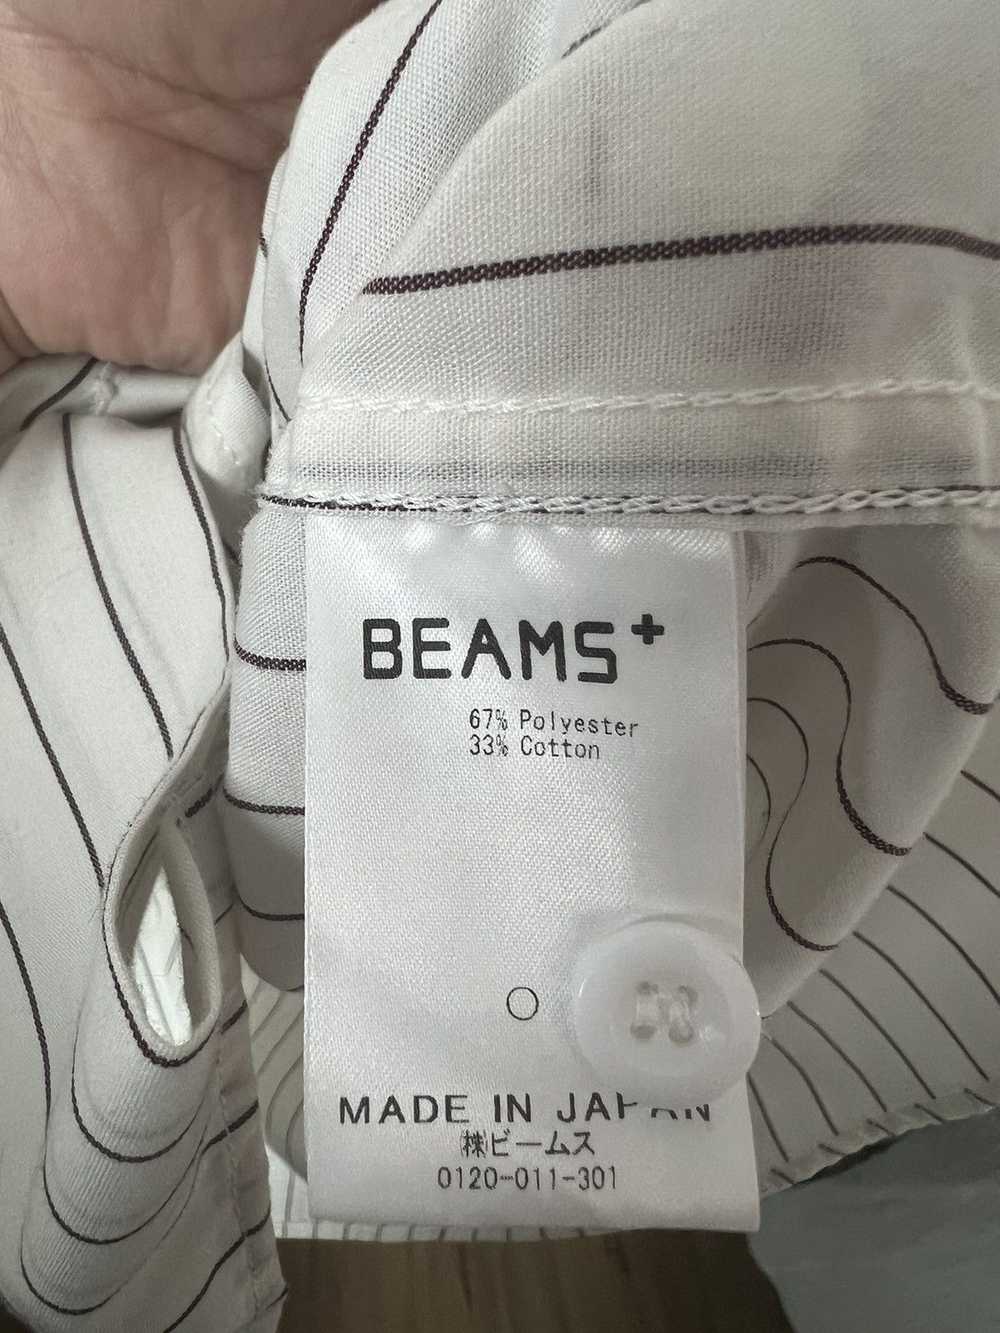 Beams Plus Beams + double pocket ss shirt - image 4